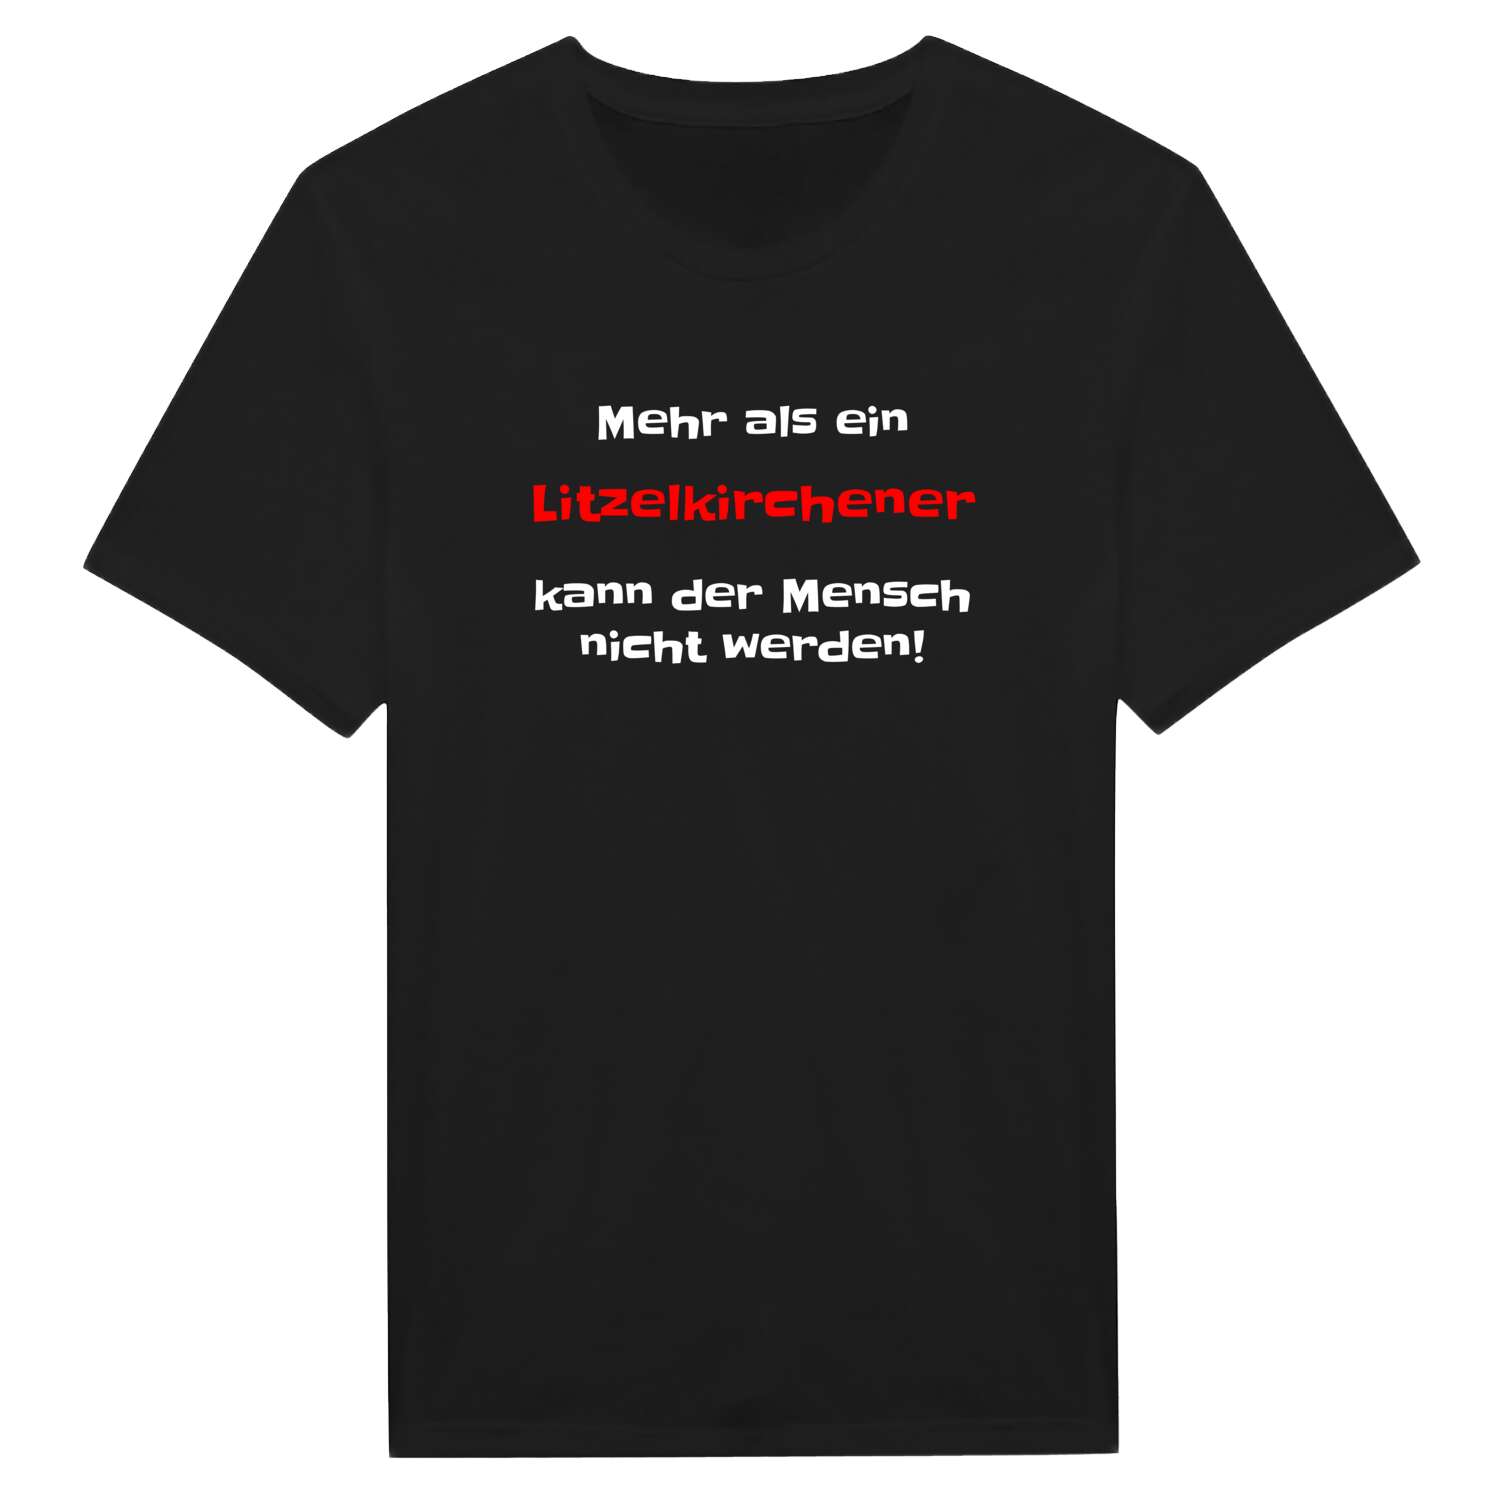 Litzelkirchen T-Shirt »Mehr als ein«